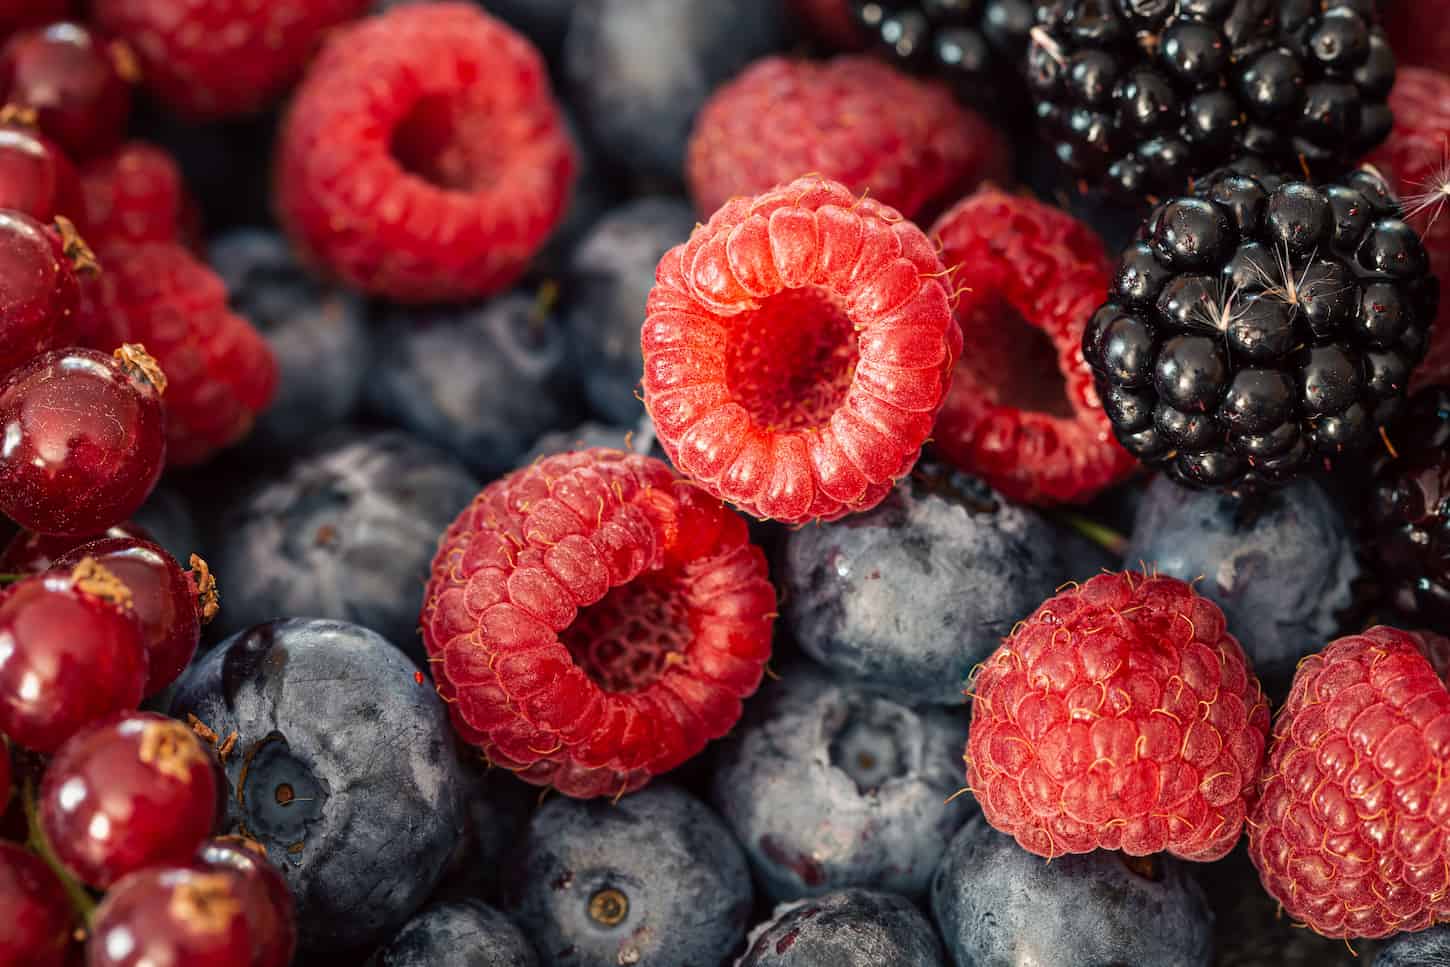 An image of different berries, raspberries, blueberries, and blackberries macro shot.